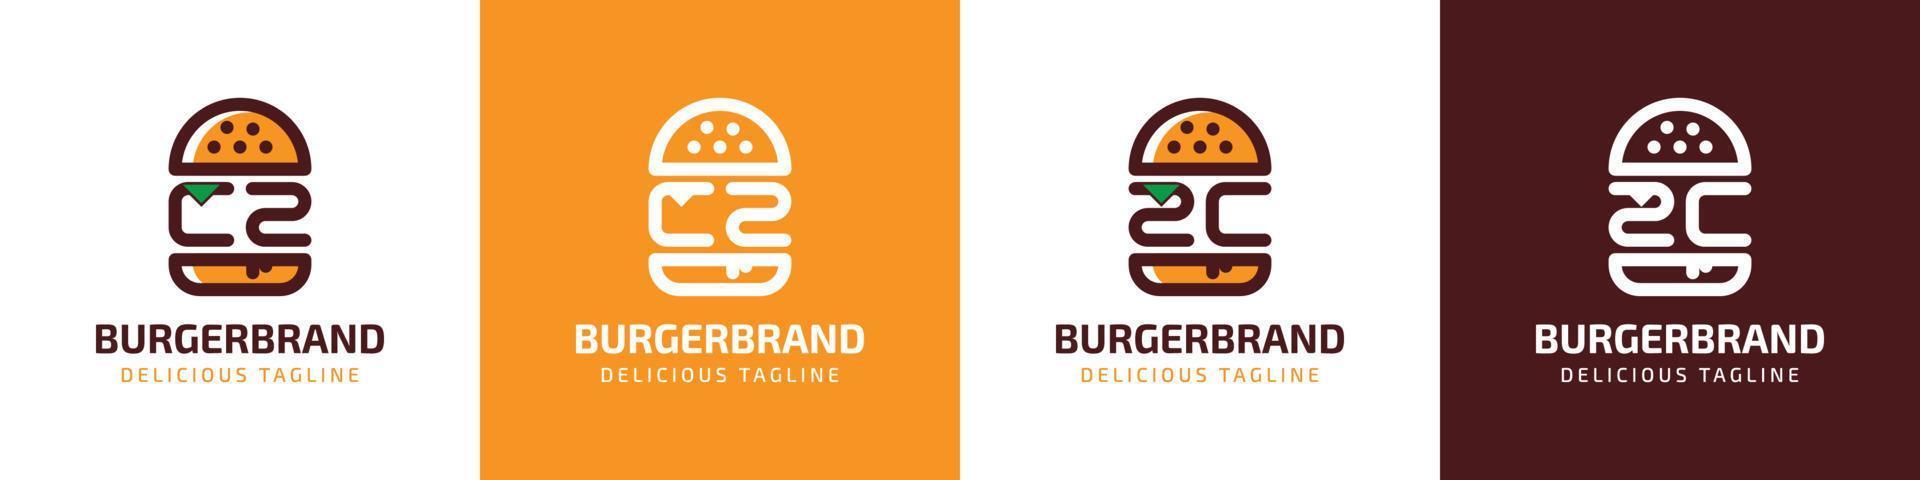 letra cz y zc hamburguesa logo, adecuado para ninguna negocio relacionado a hamburguesa con cz o zc iniciales. vector